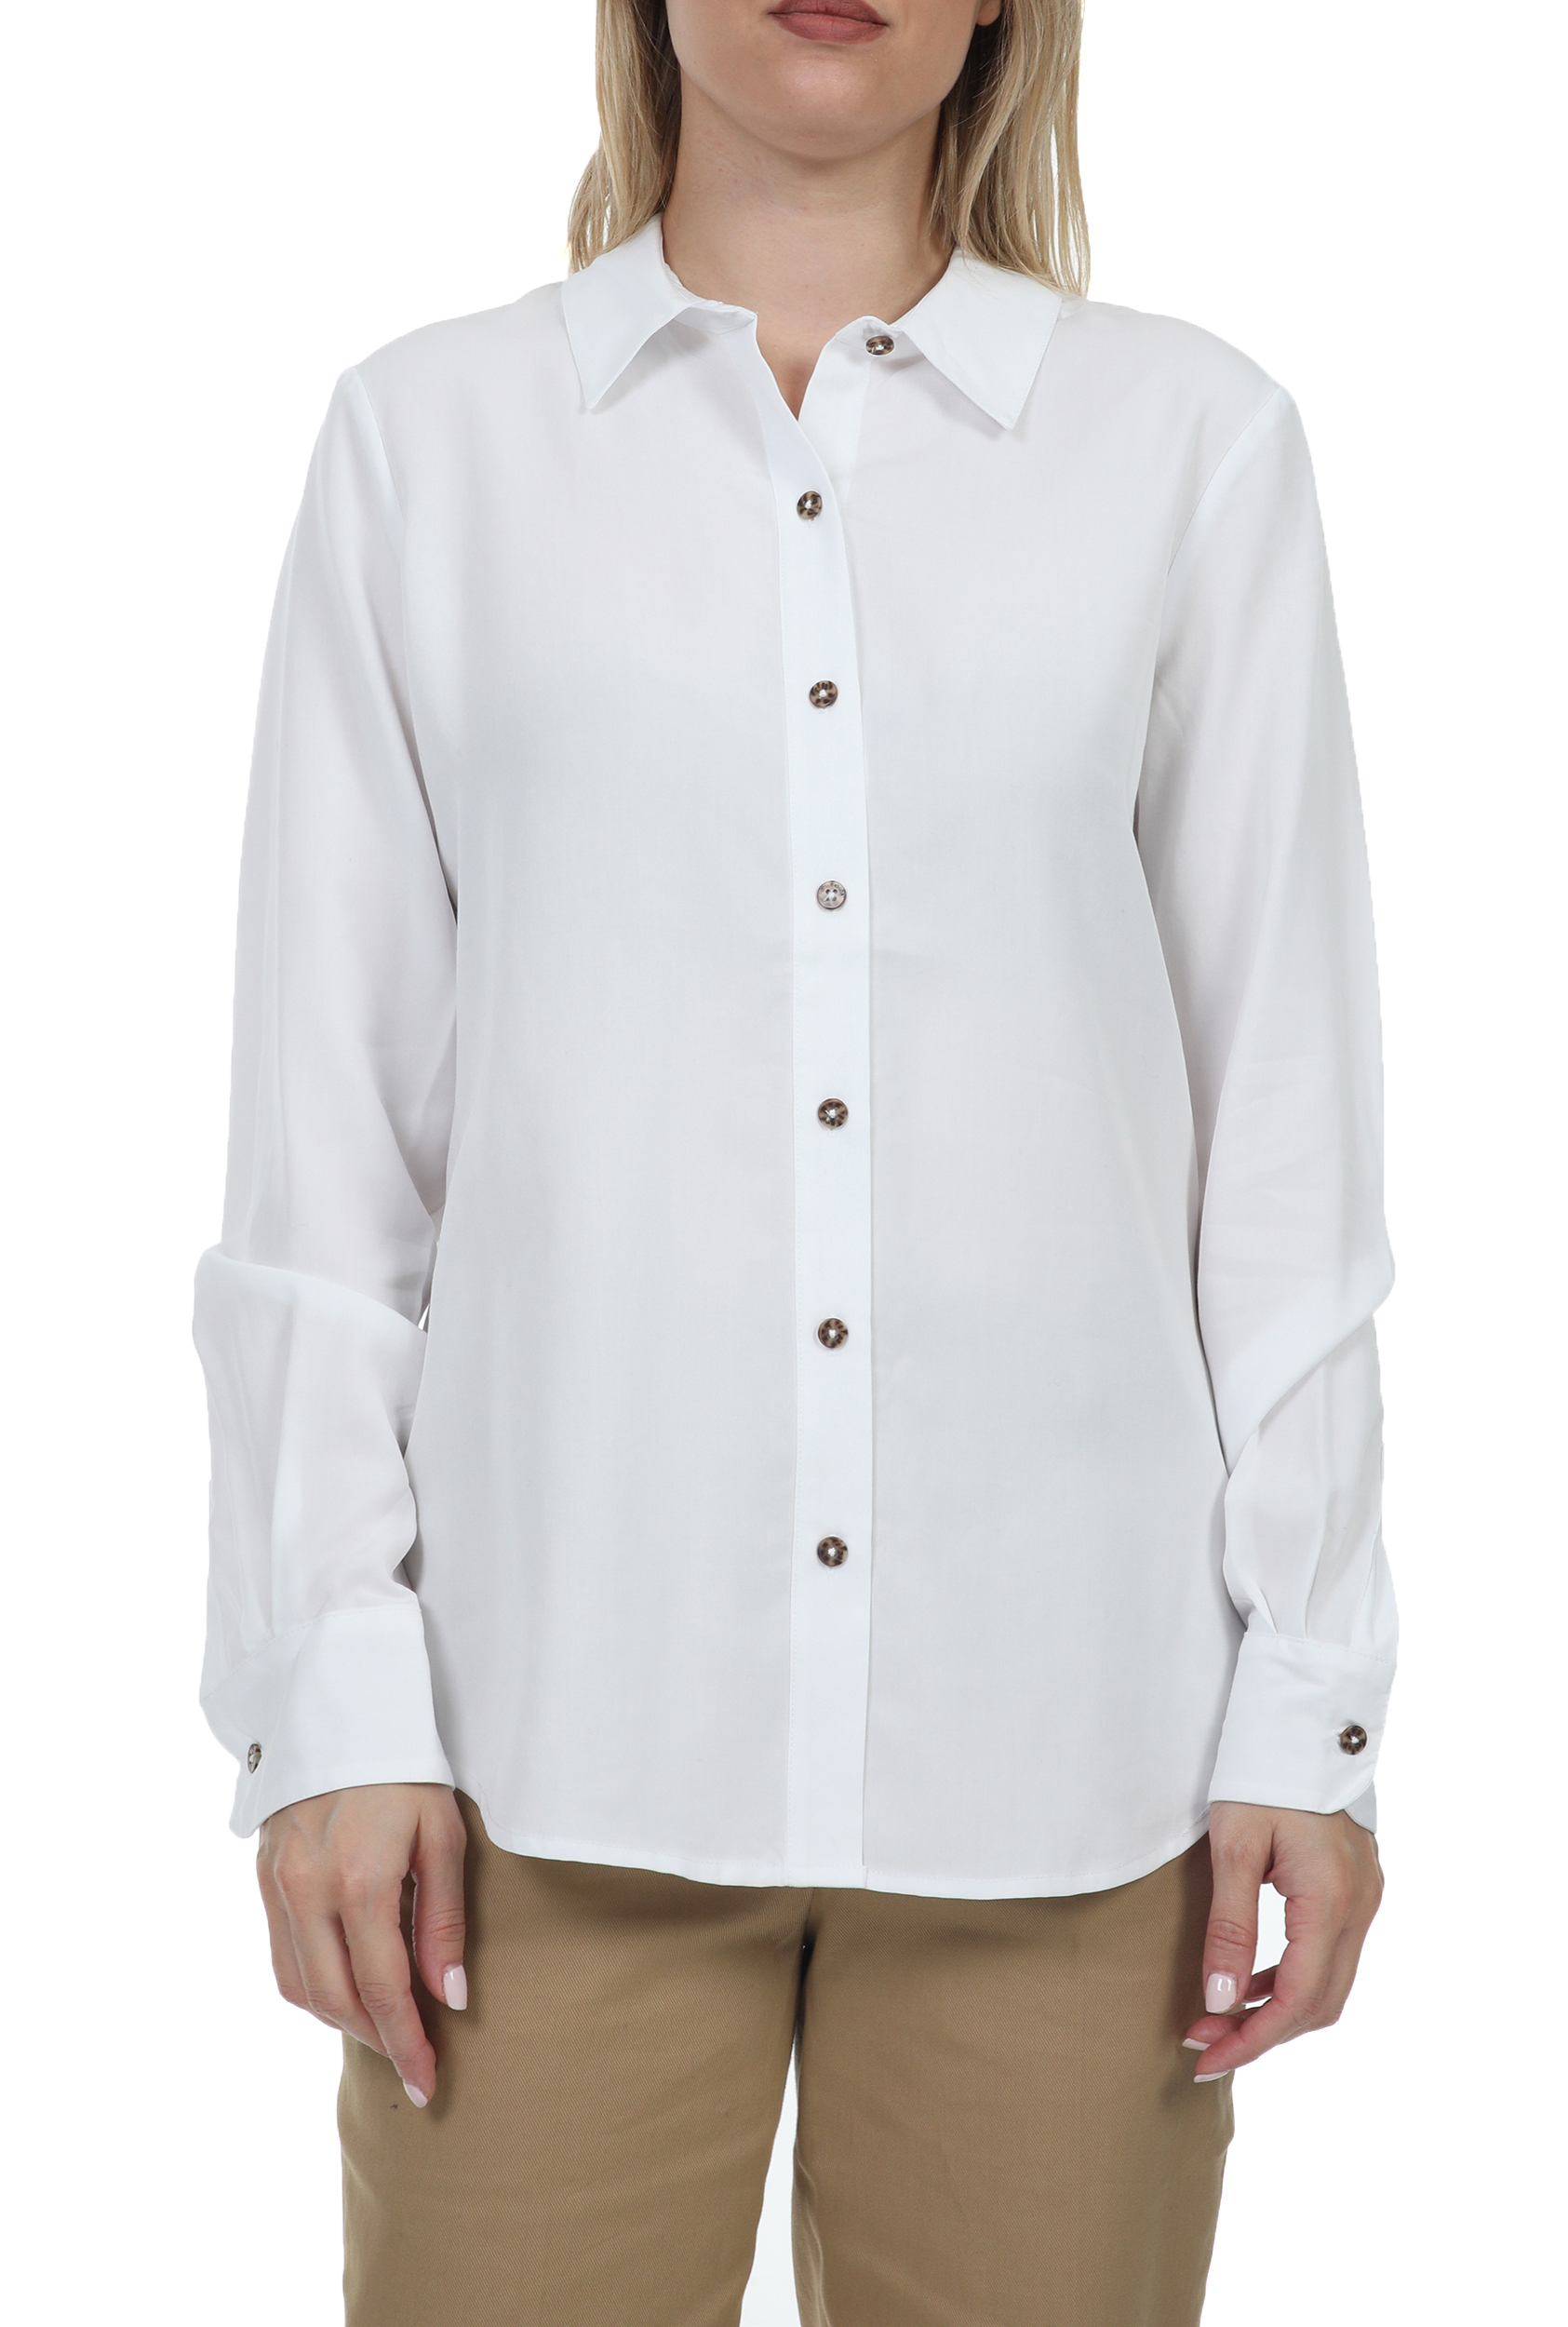 Γυναικεία/Ρούχα/Πουκάμισα/Μακρυμάνικα SCOTCH & SODA - Γυναικείο πουκάμισο SCOTCH & SODA λευκό